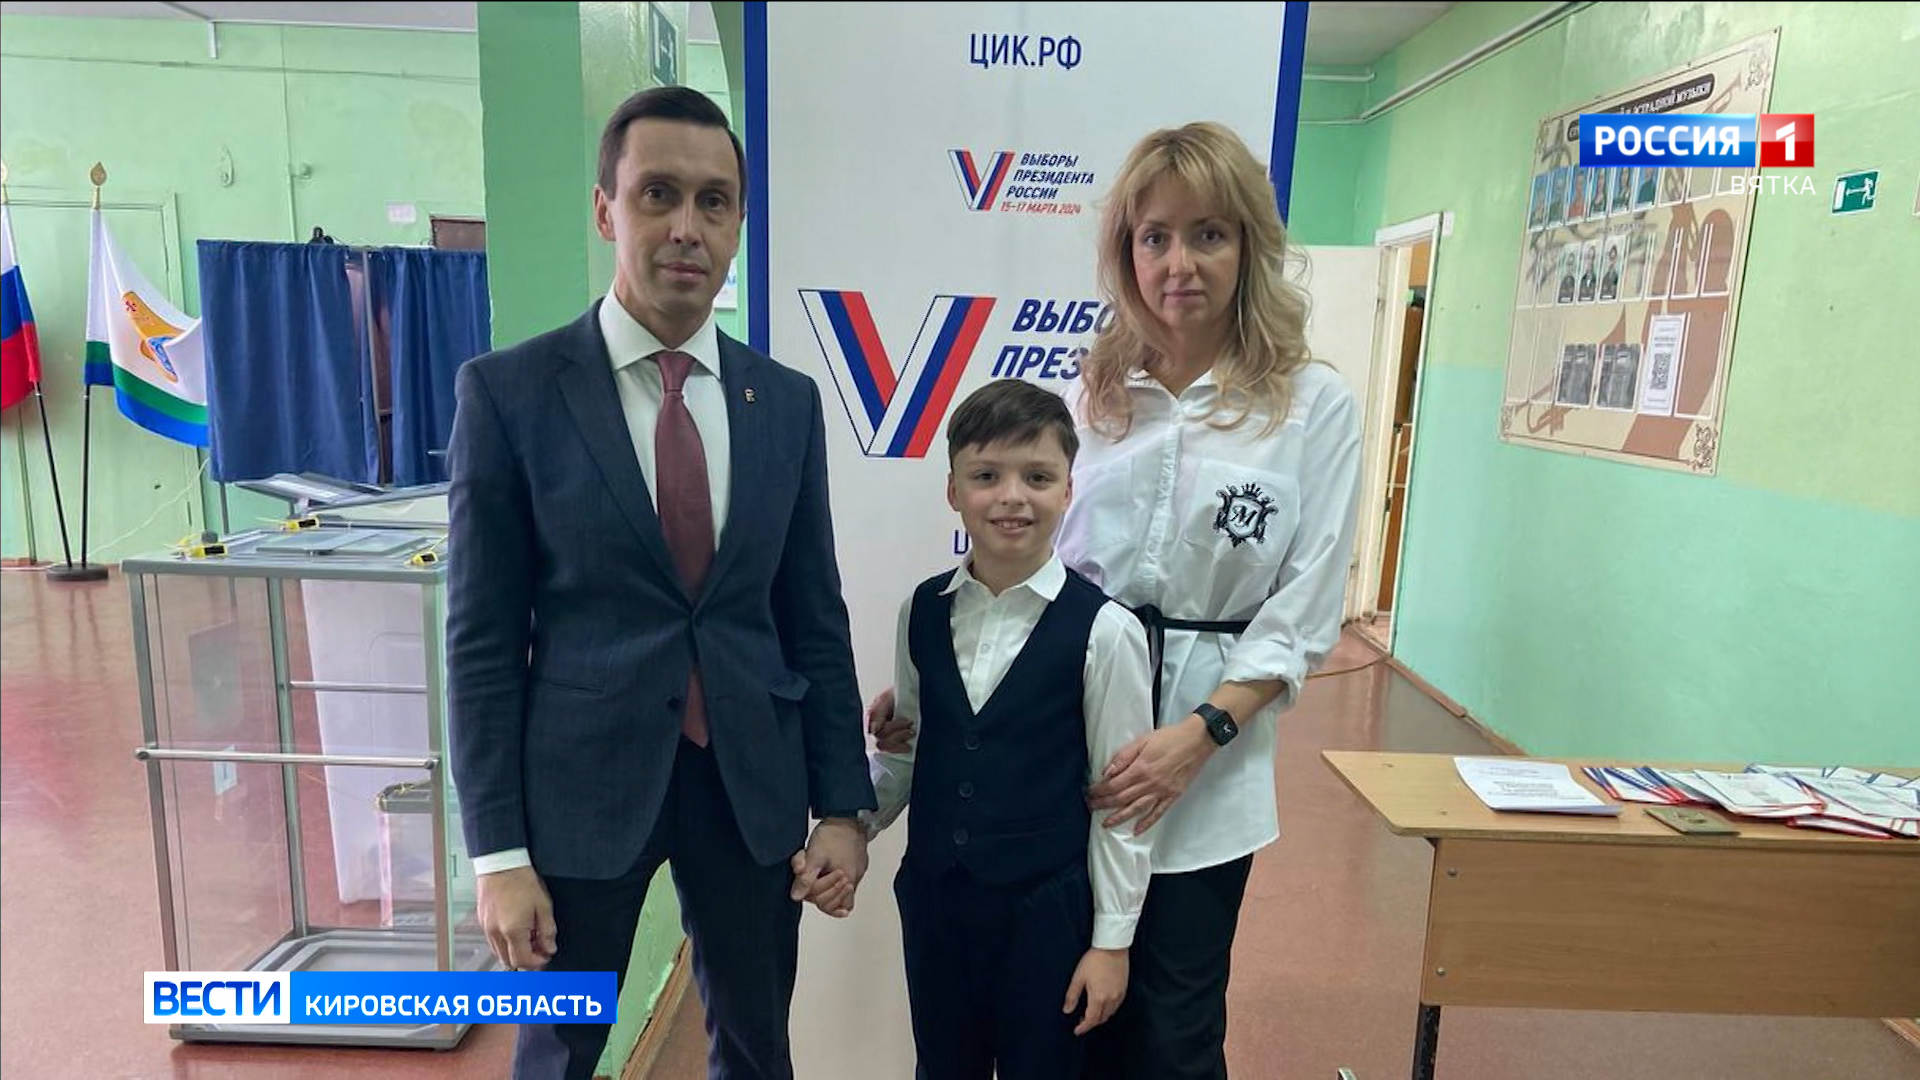 Члены правительства Кировской области голосуют за будущее России семьями